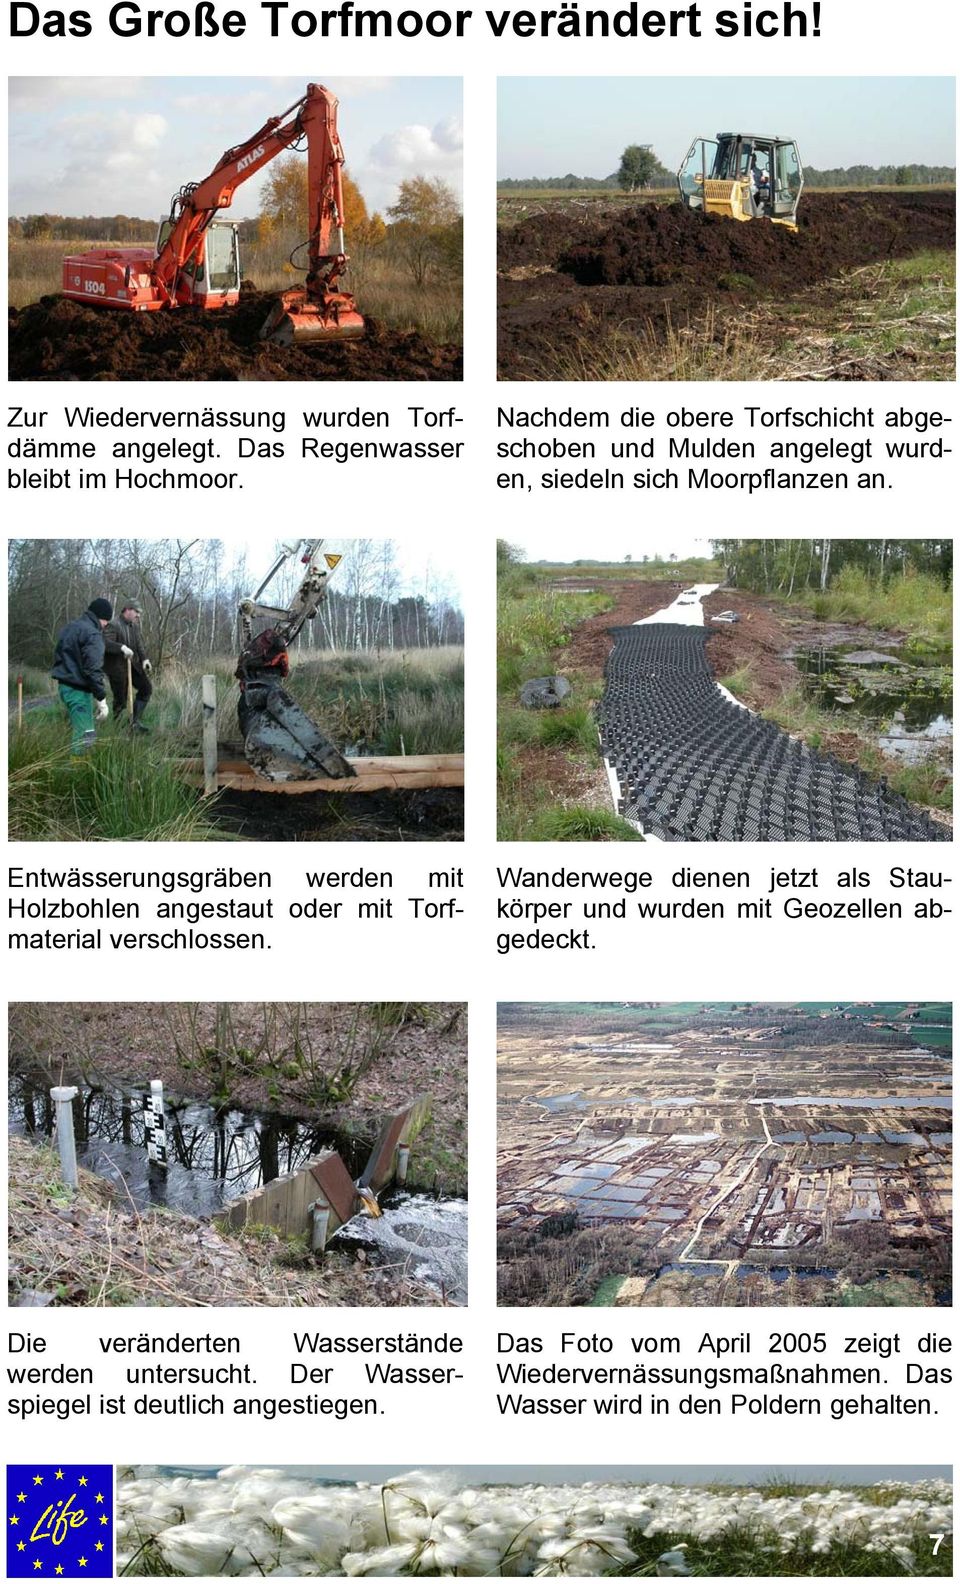 Entwässerungsgräben werden mit Holzbohlen angestaut oder mit Torfmaterial verschlossen.